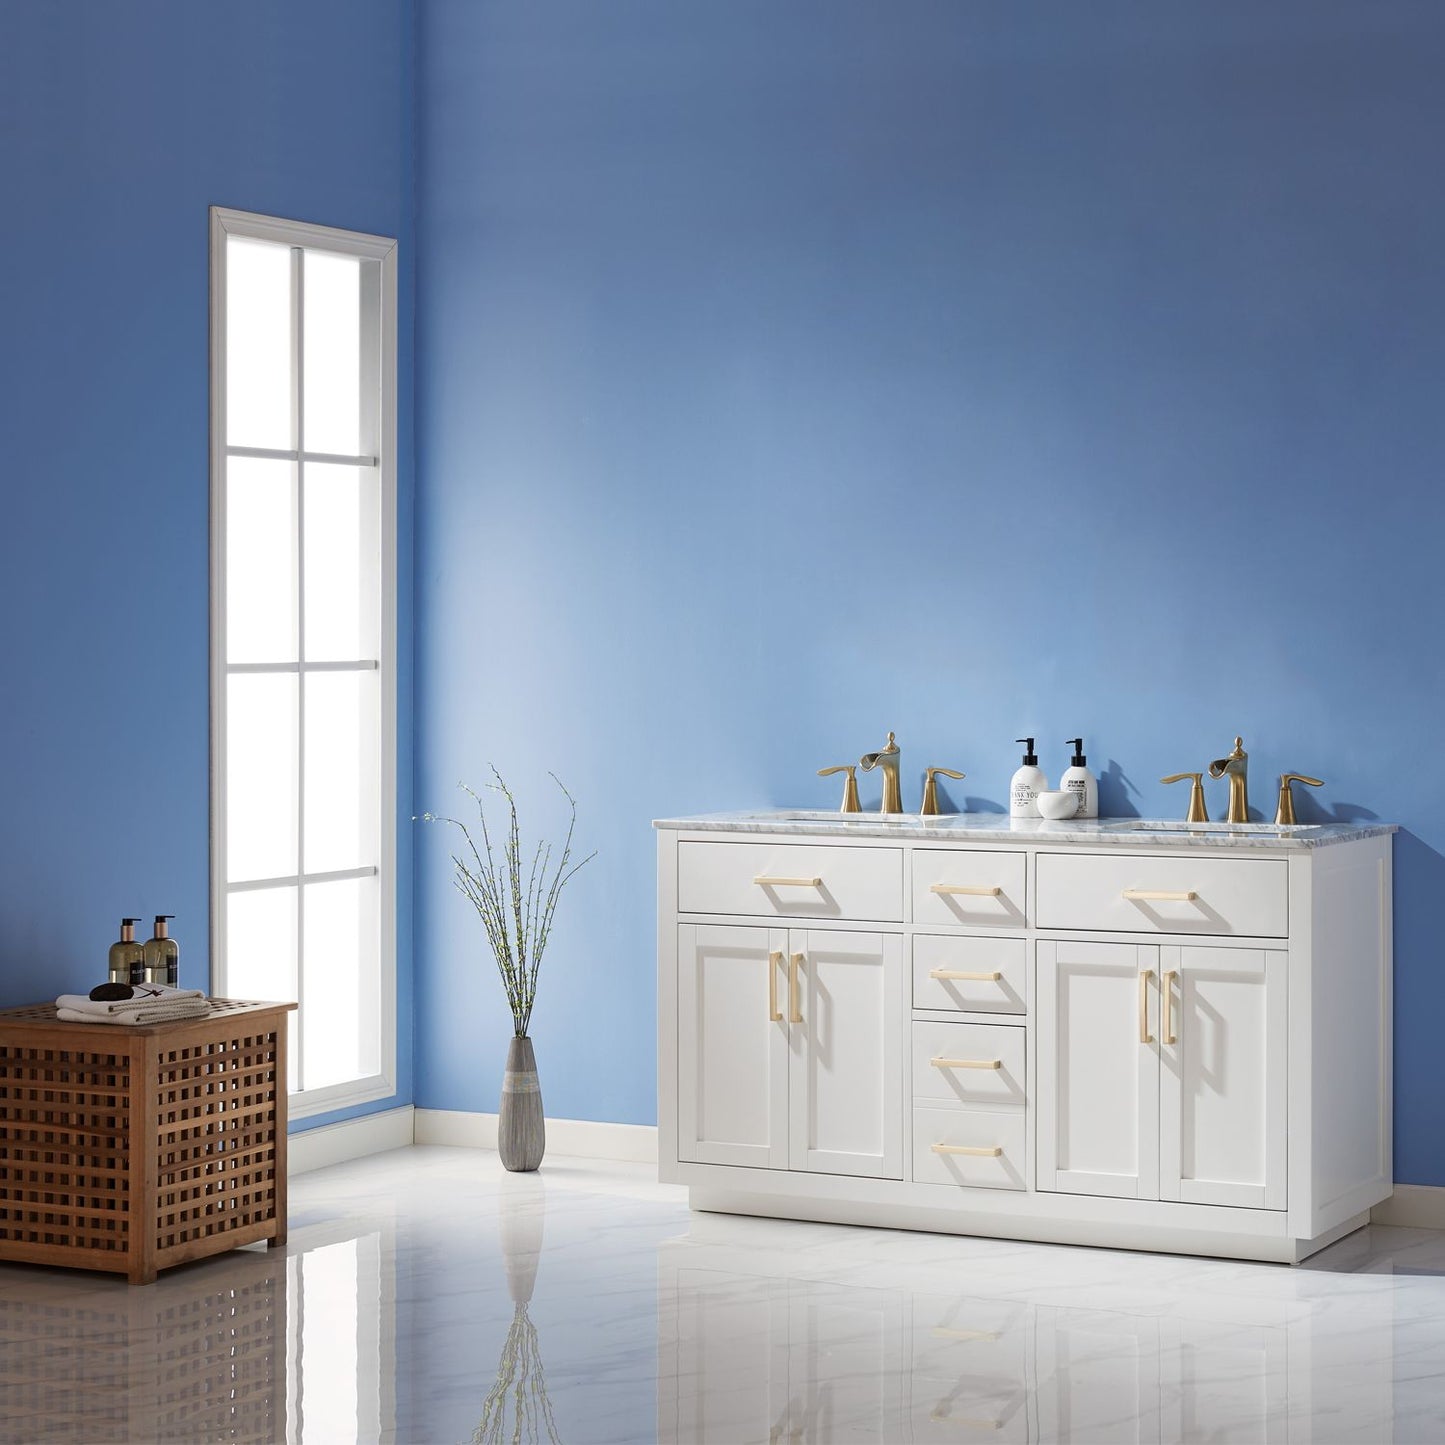 Altair Ivy 60" Double Bathroom Vanity Set Countertop without Mirror - Luxe Bathroom Vanities